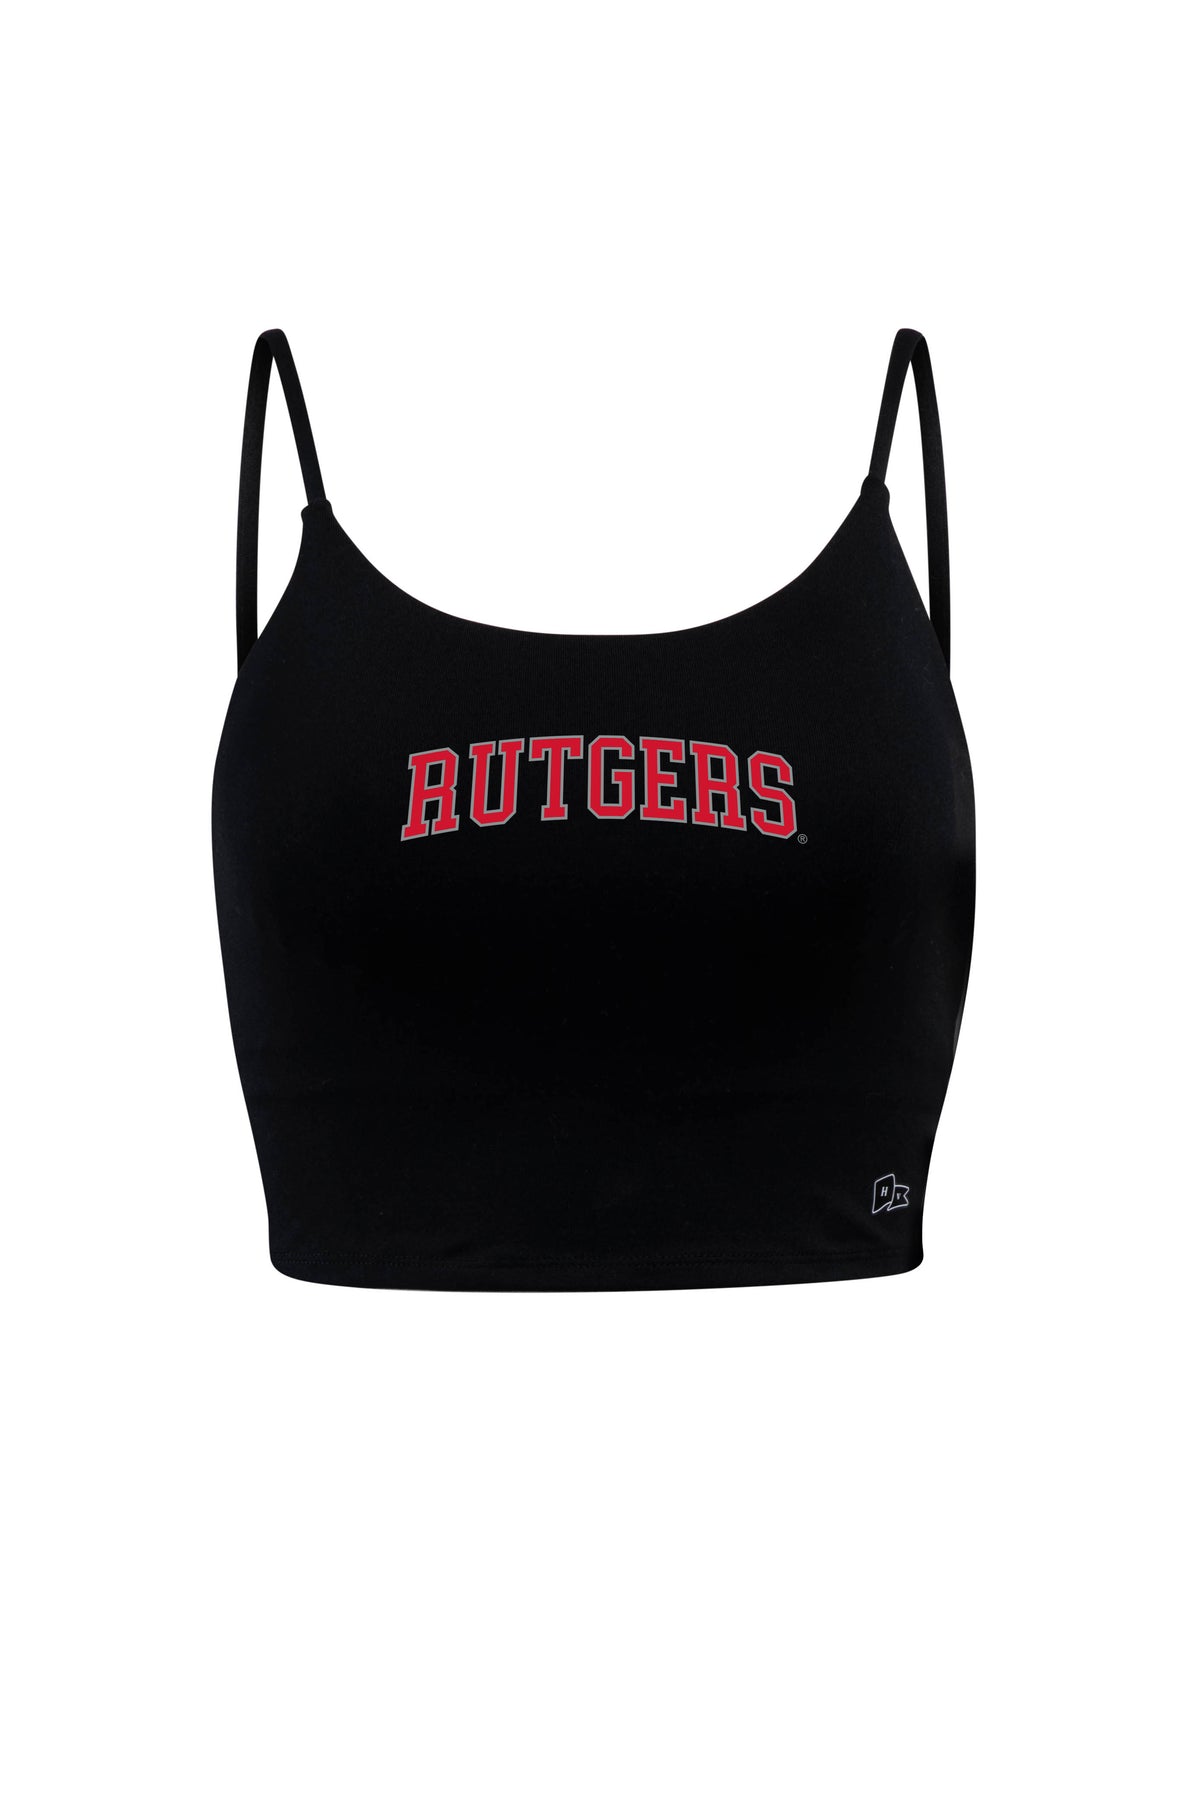 Rutgers University Bra Tank Top